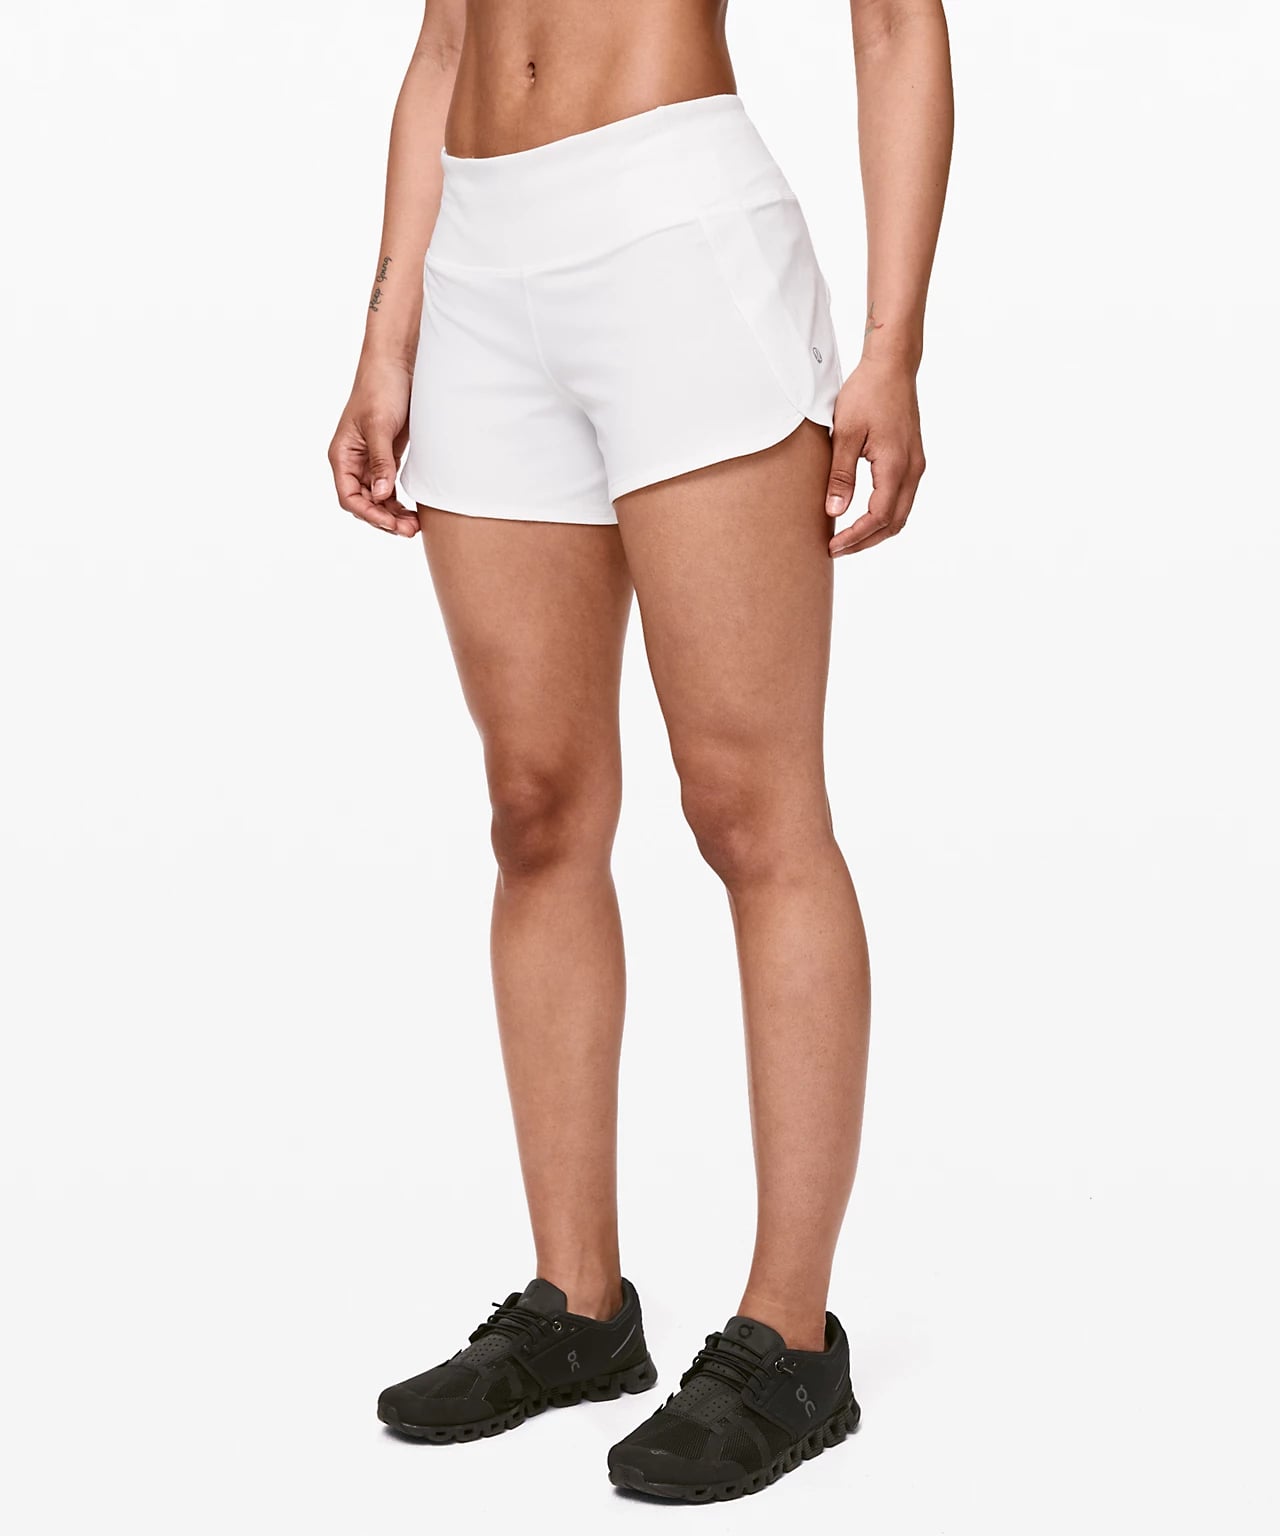 best lululemon shorts for running